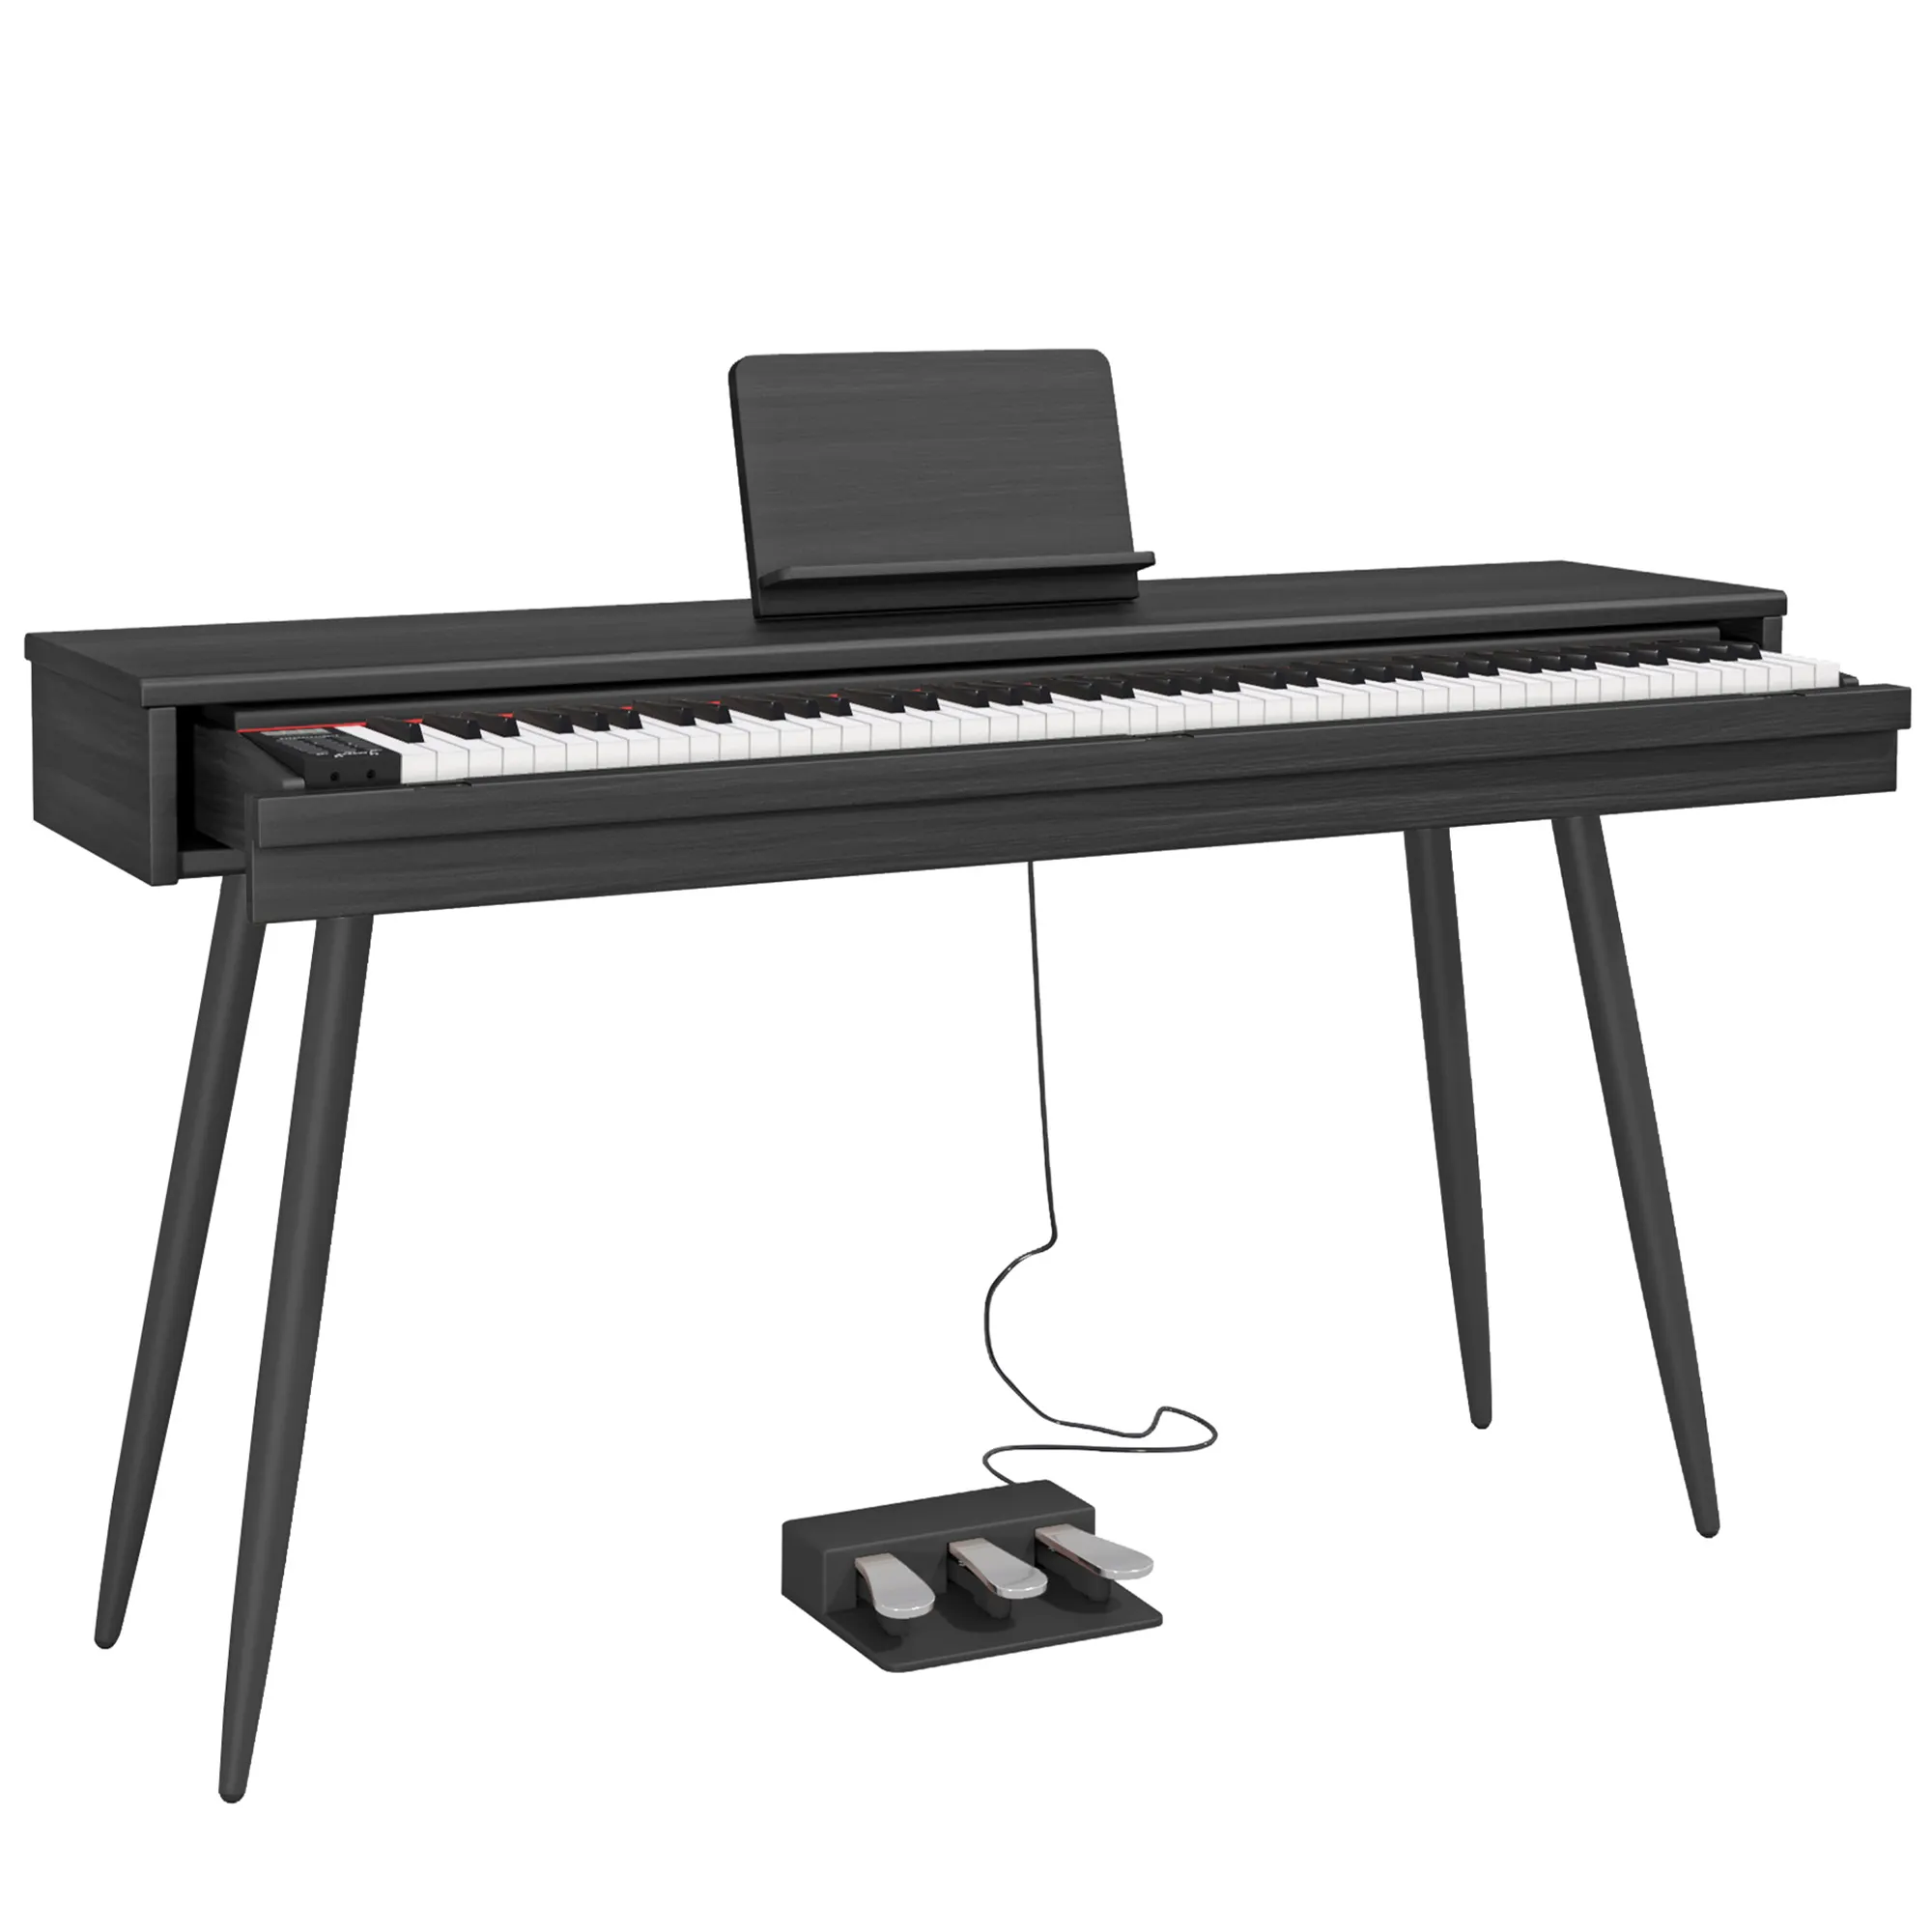 BLANTH cassetto pianoforte tastiera pianoforte elettronico pianoforte digitale strumenti musicali elettrici